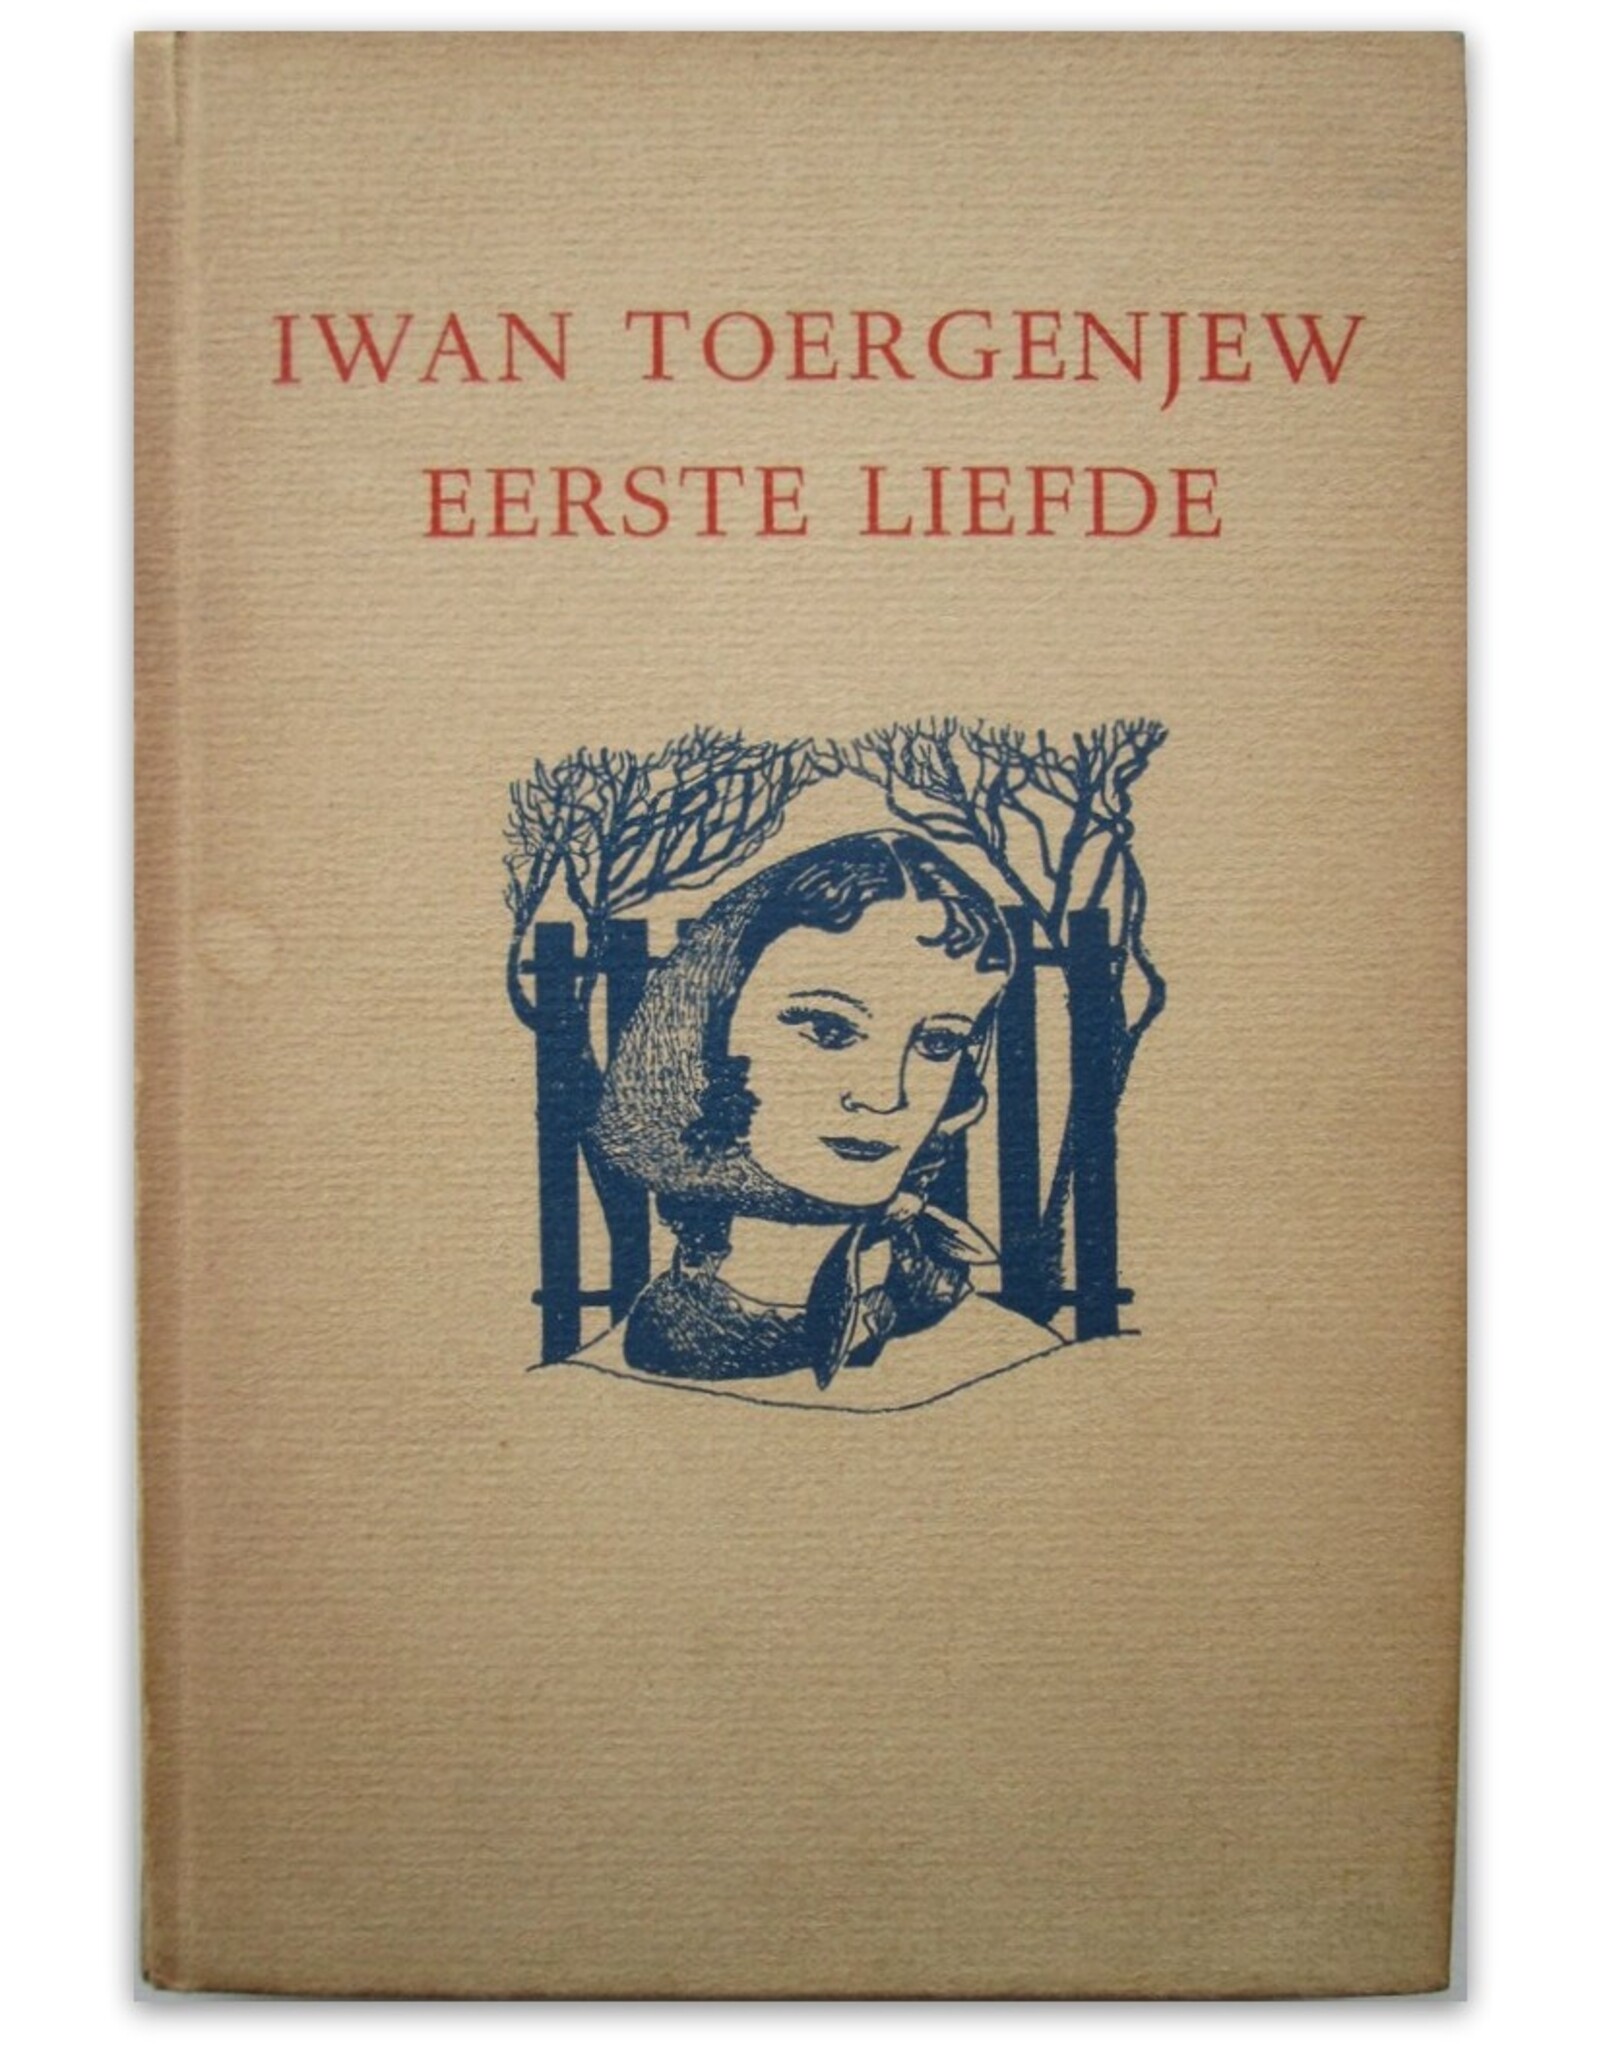 Iwan Toergenjew - Eerste liefde. Uit het Russisch vertaald door Aleida G. Schot en verlucht door Fiep Westendorp